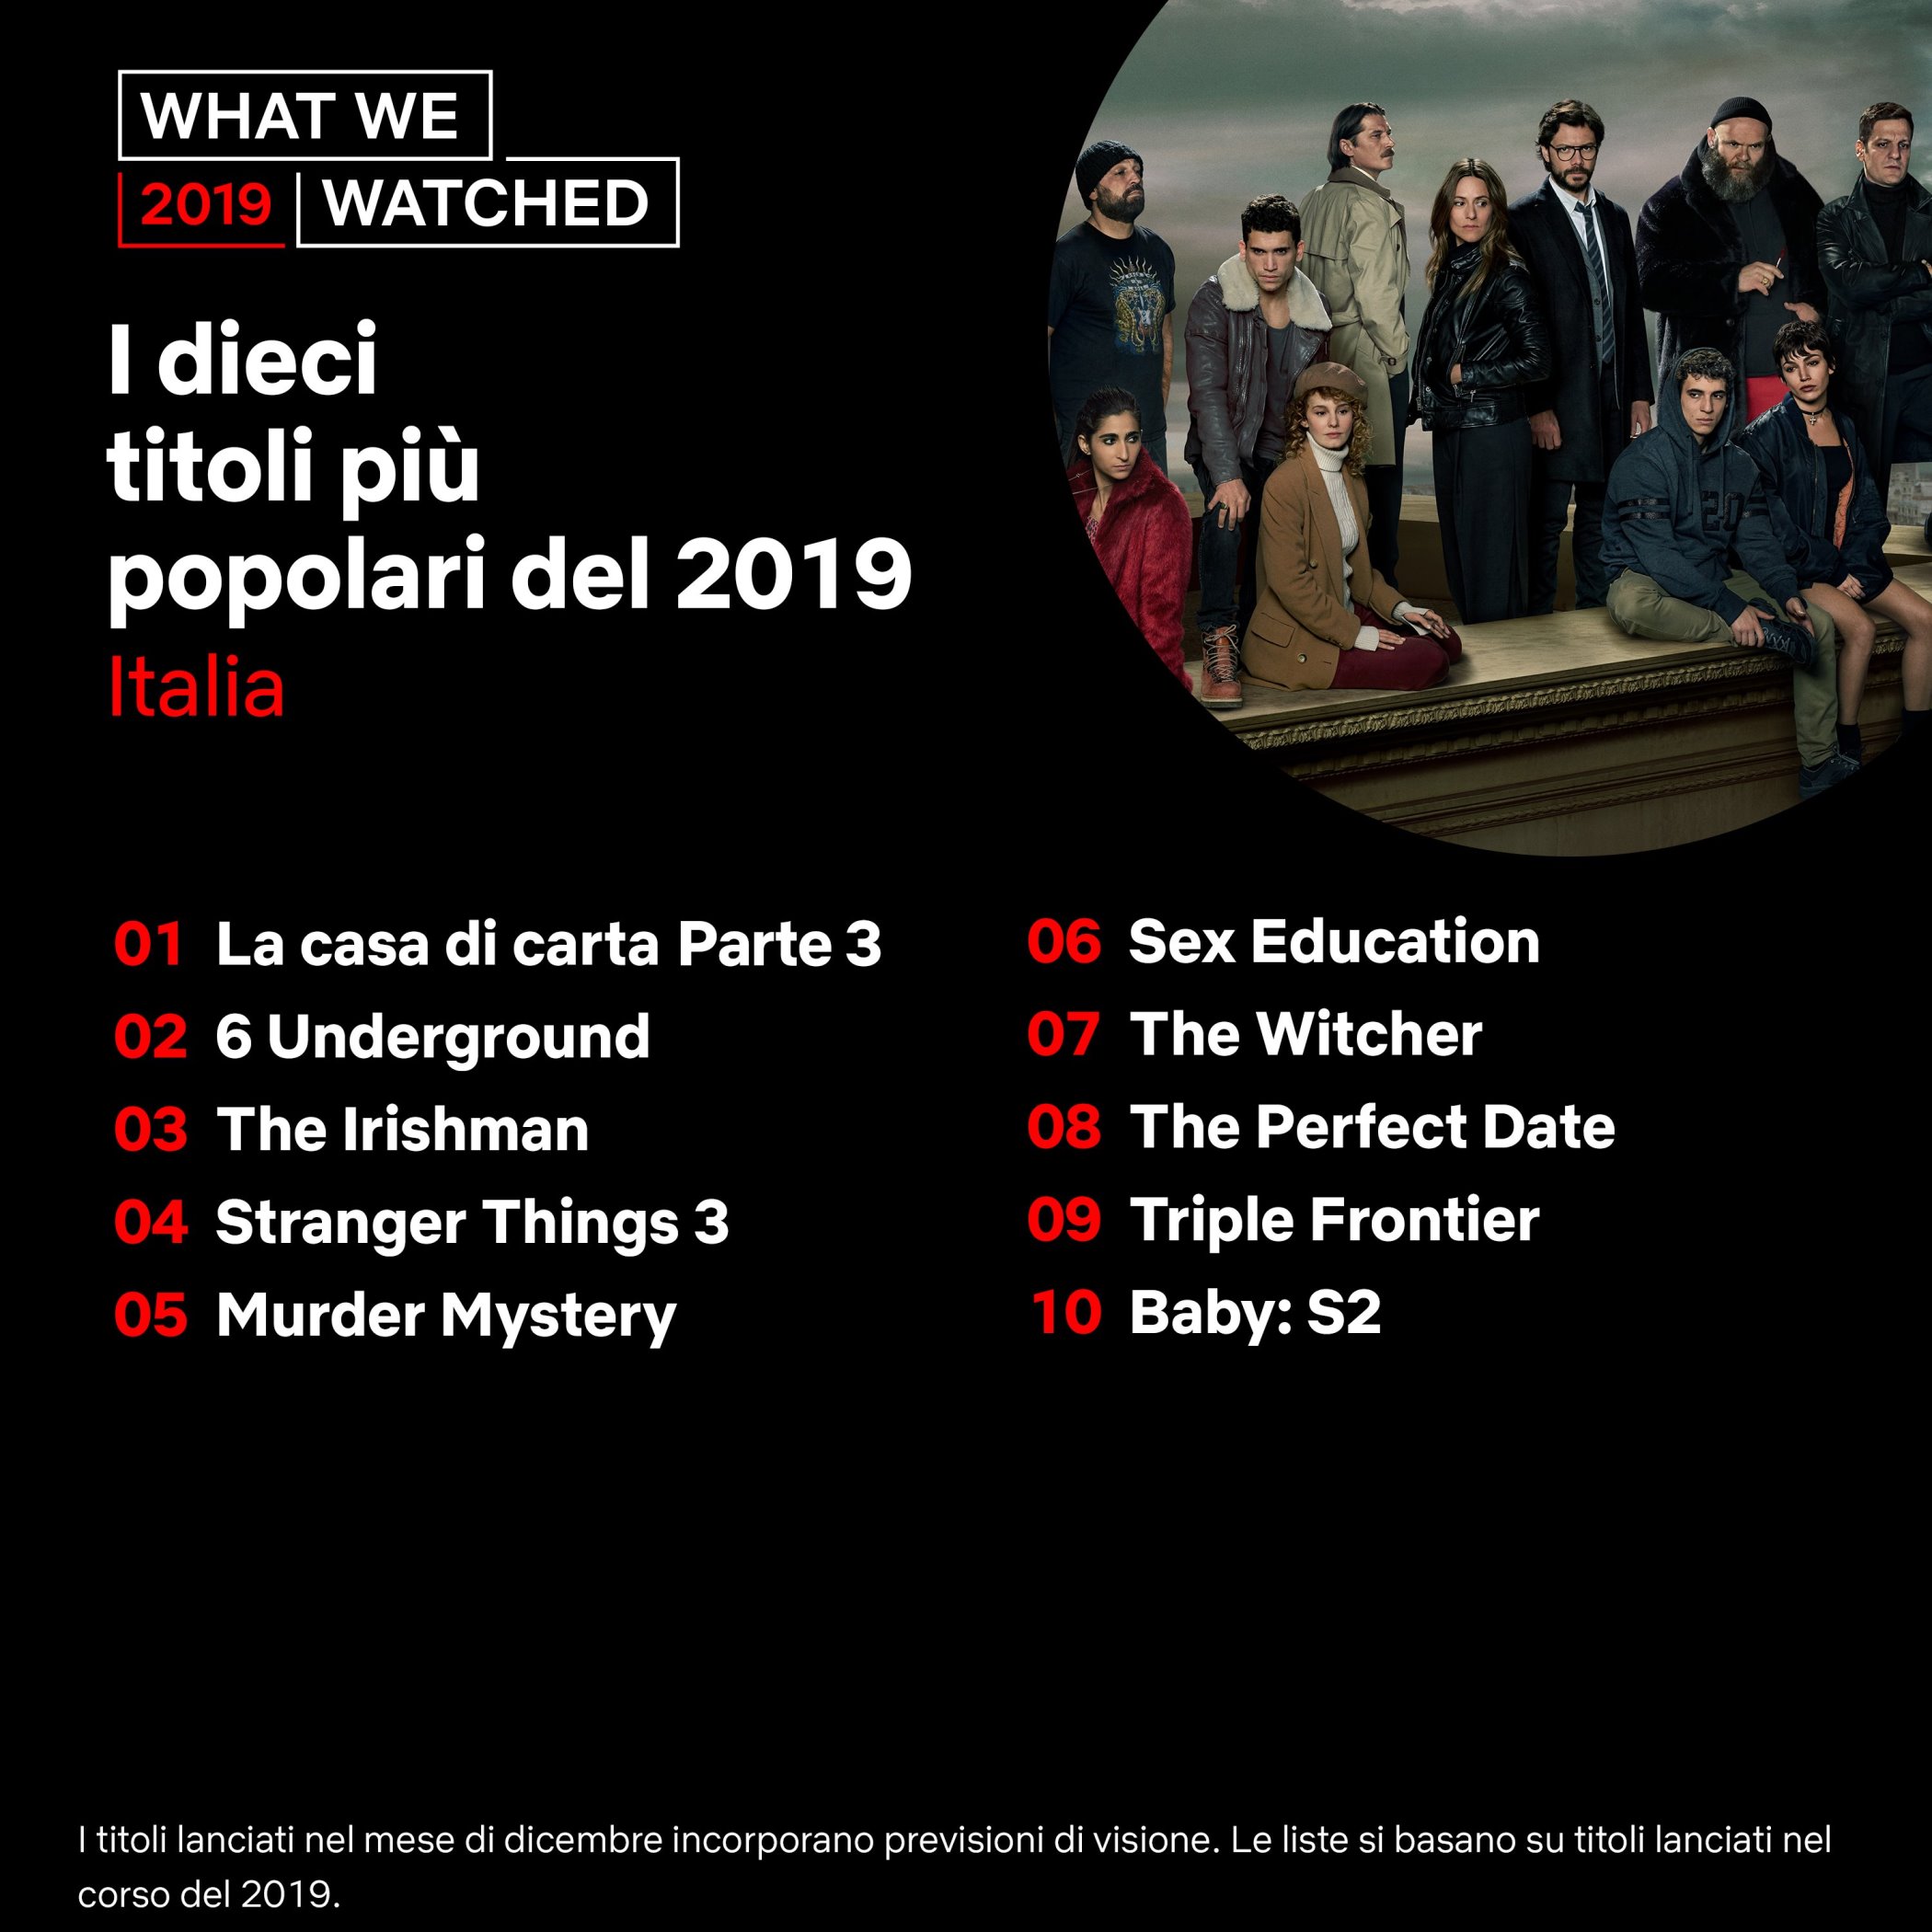 I dieci titoli più popolari del 2019 su Netflix in Italia